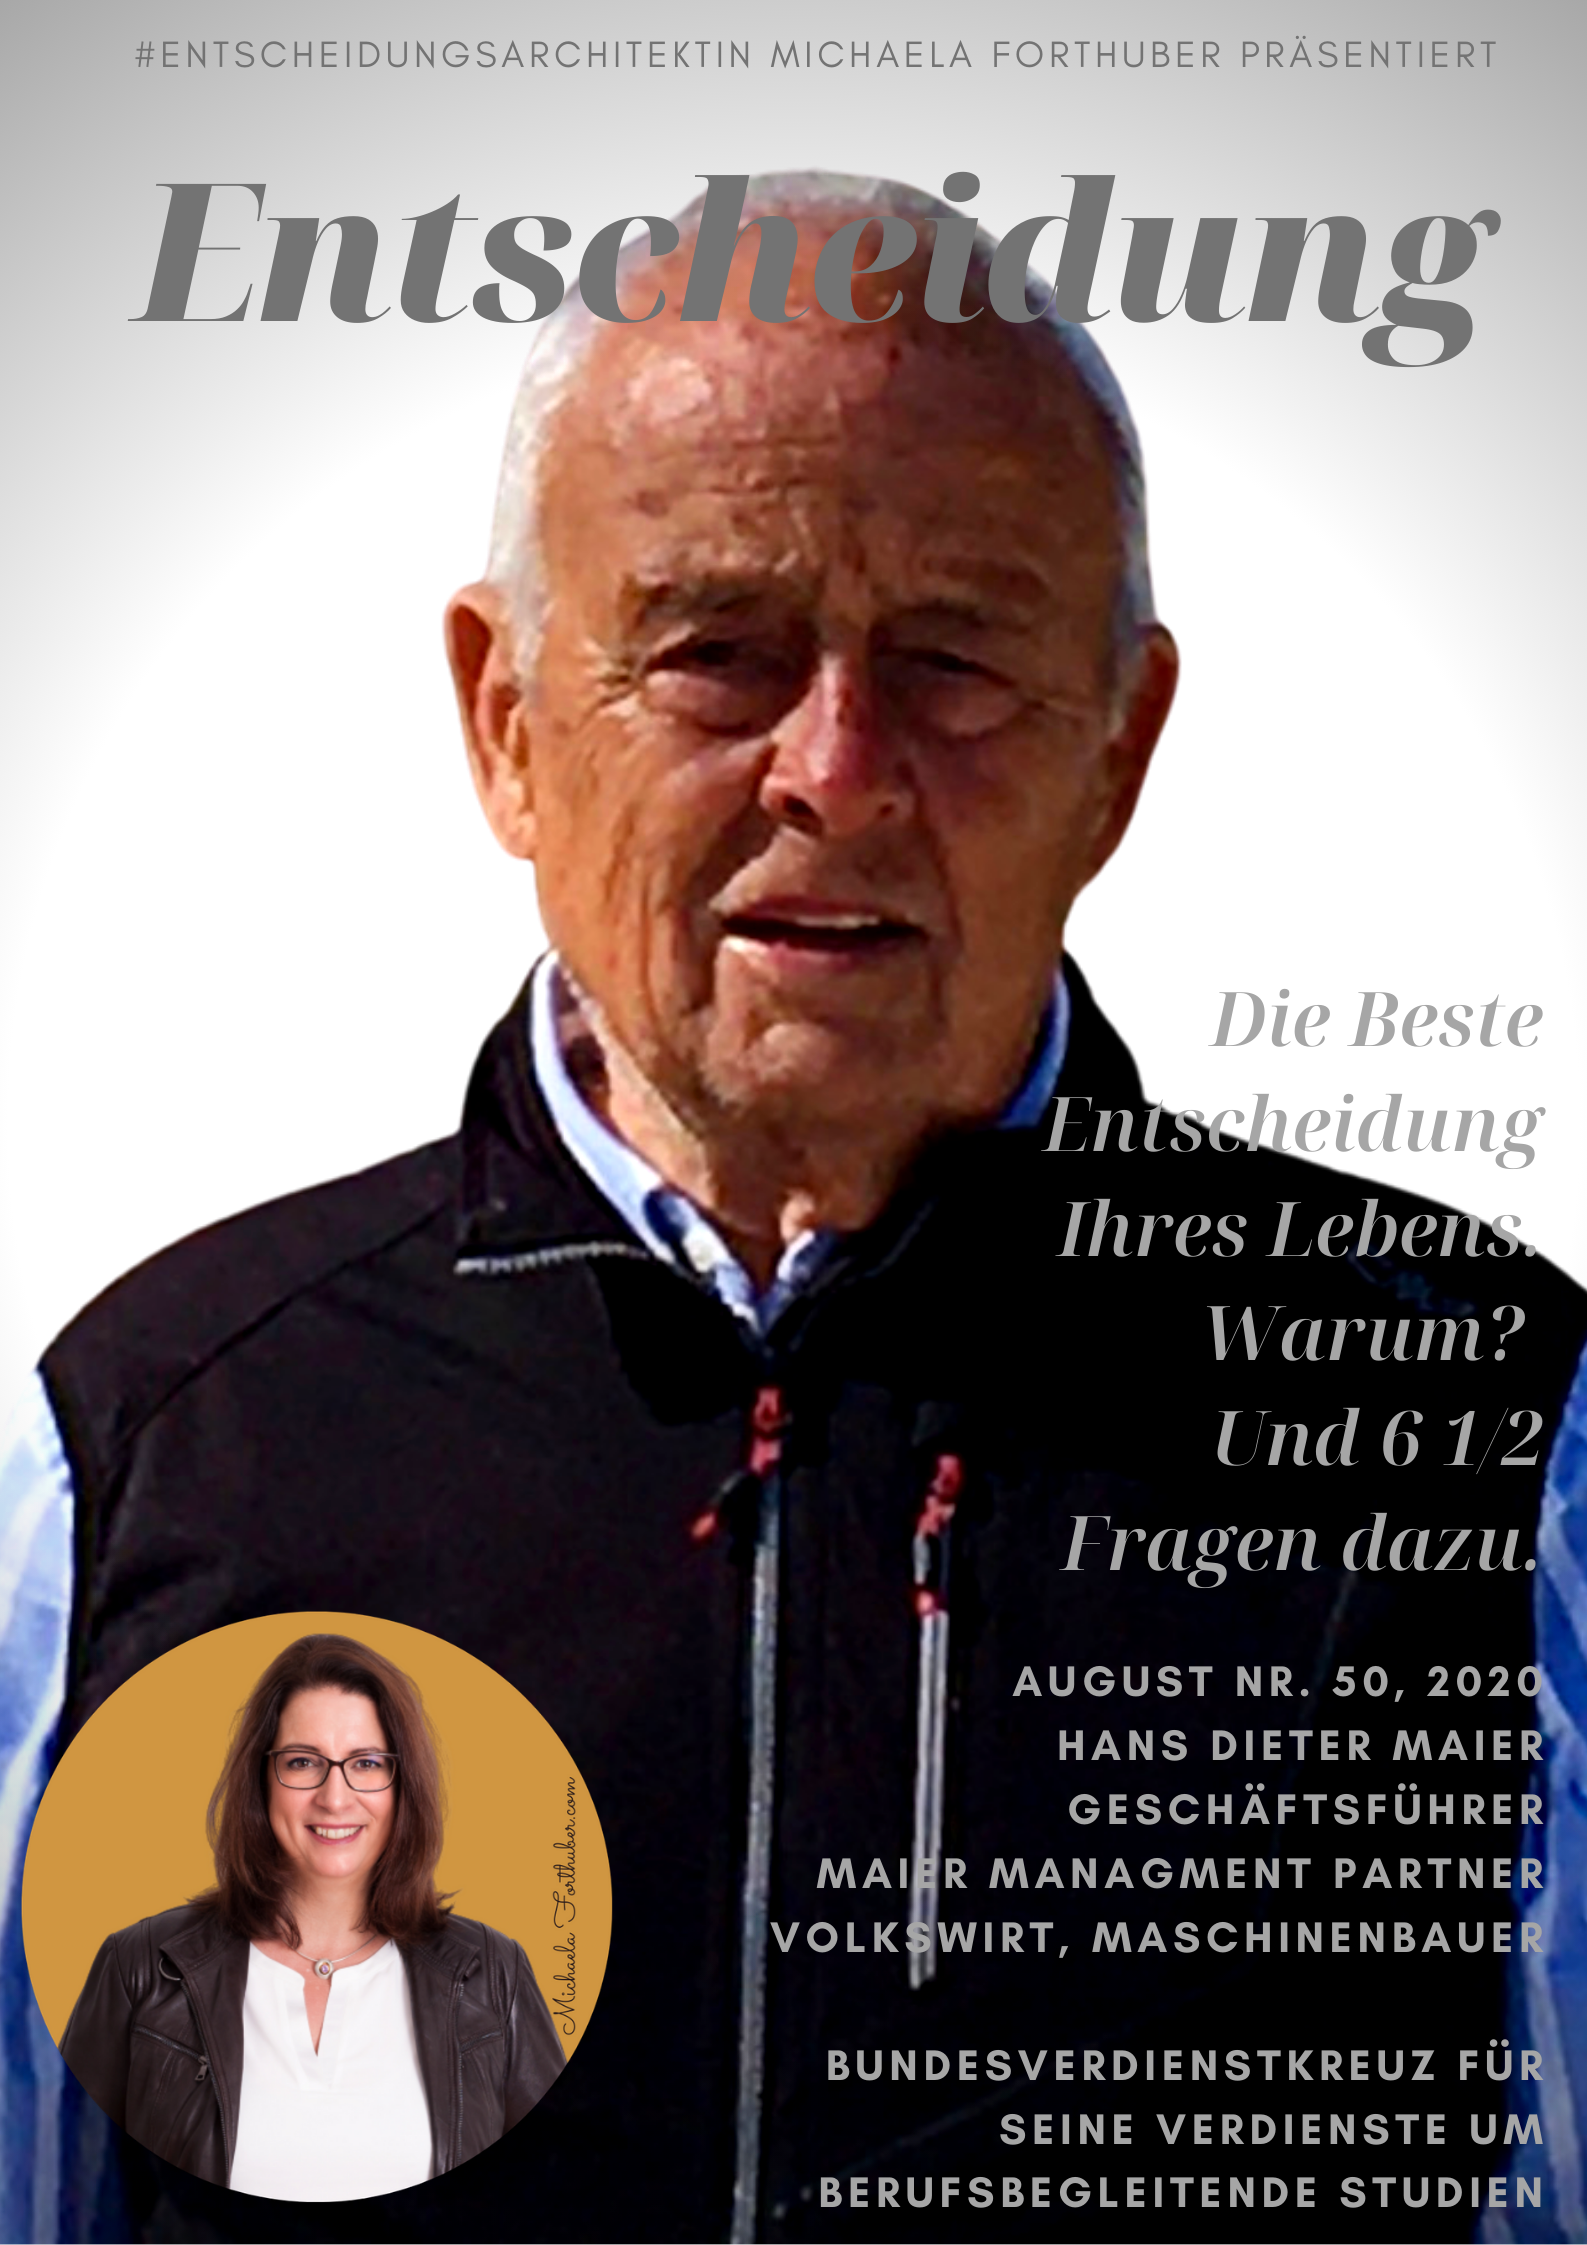 Cover Bild Blog Interview Michaela Forthuber #Entscheidungsarchitektin mit Hand Dieter Maier Bundesverdienstkreuz